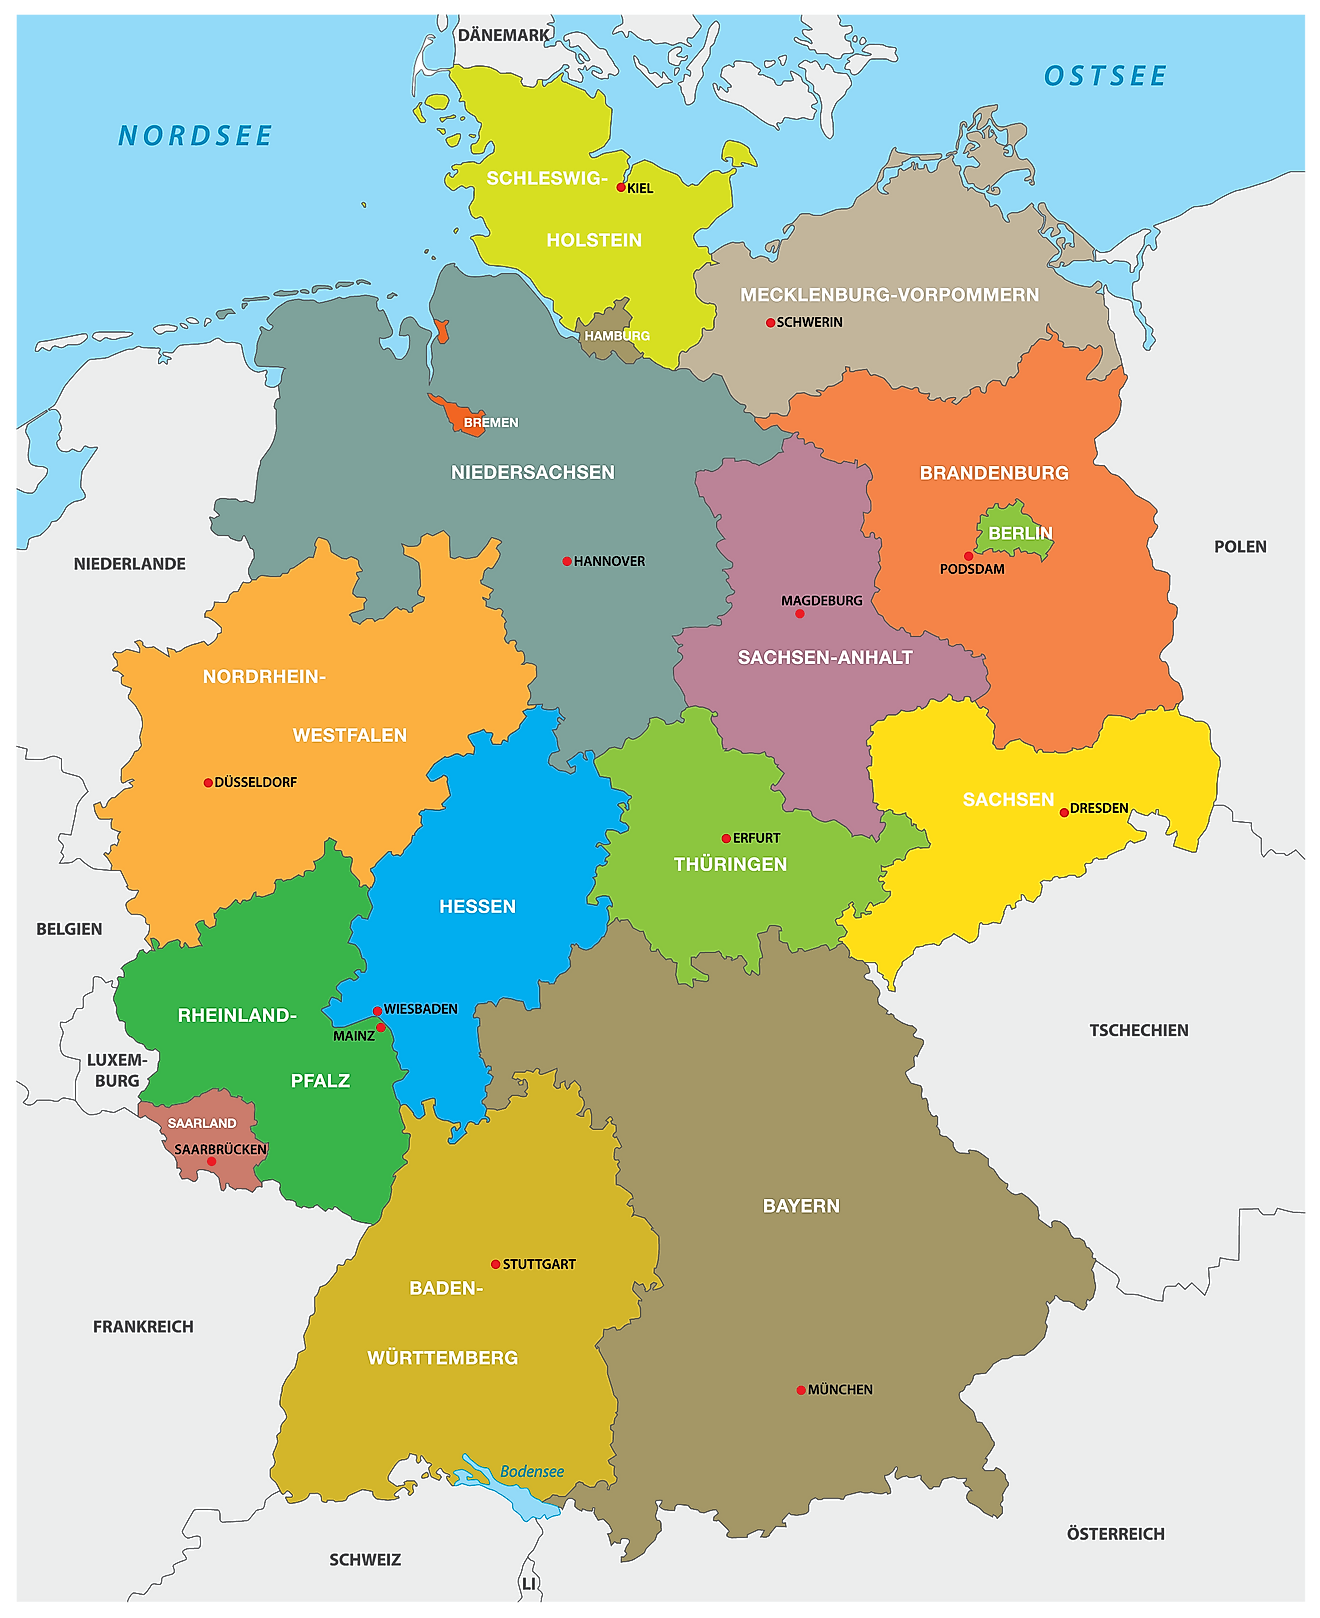 Mapa político de Alemania que muestra sus 16 estados y la ciudad capital de Berlín.